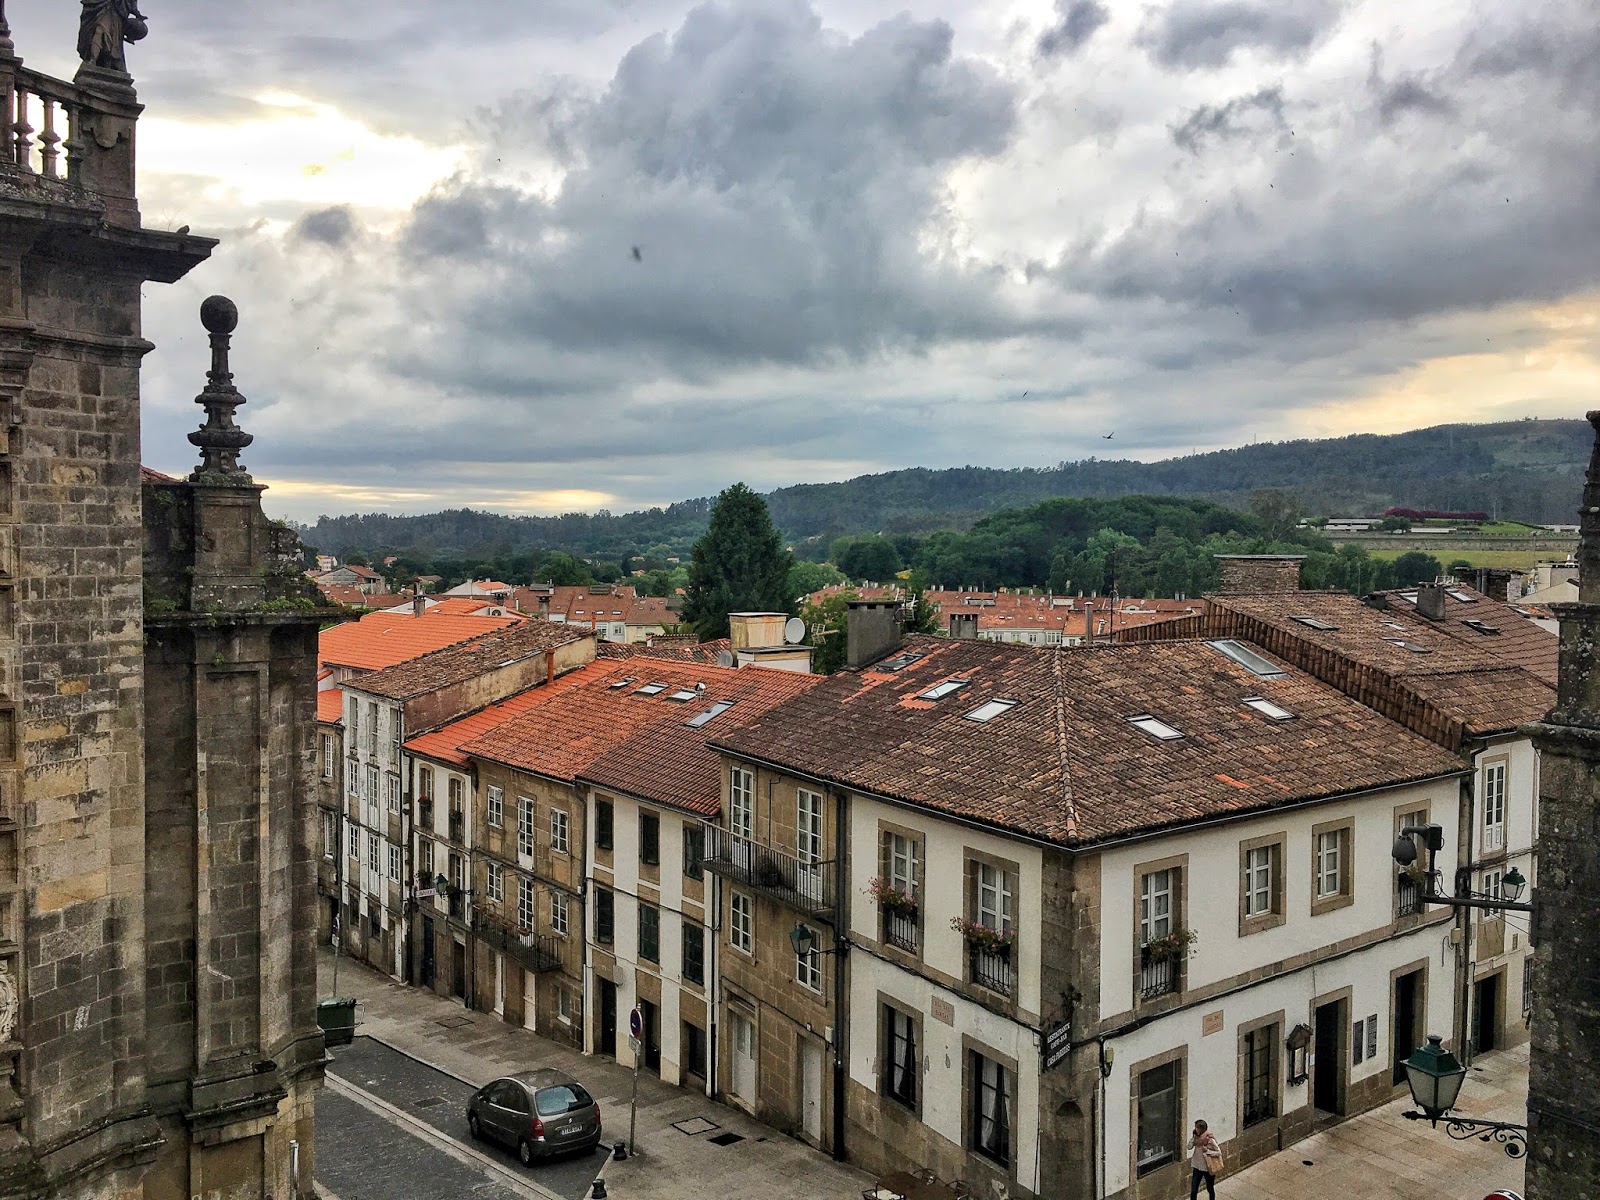 El Camino cesta, Santiago de Compostela, ejnets, travel blogger